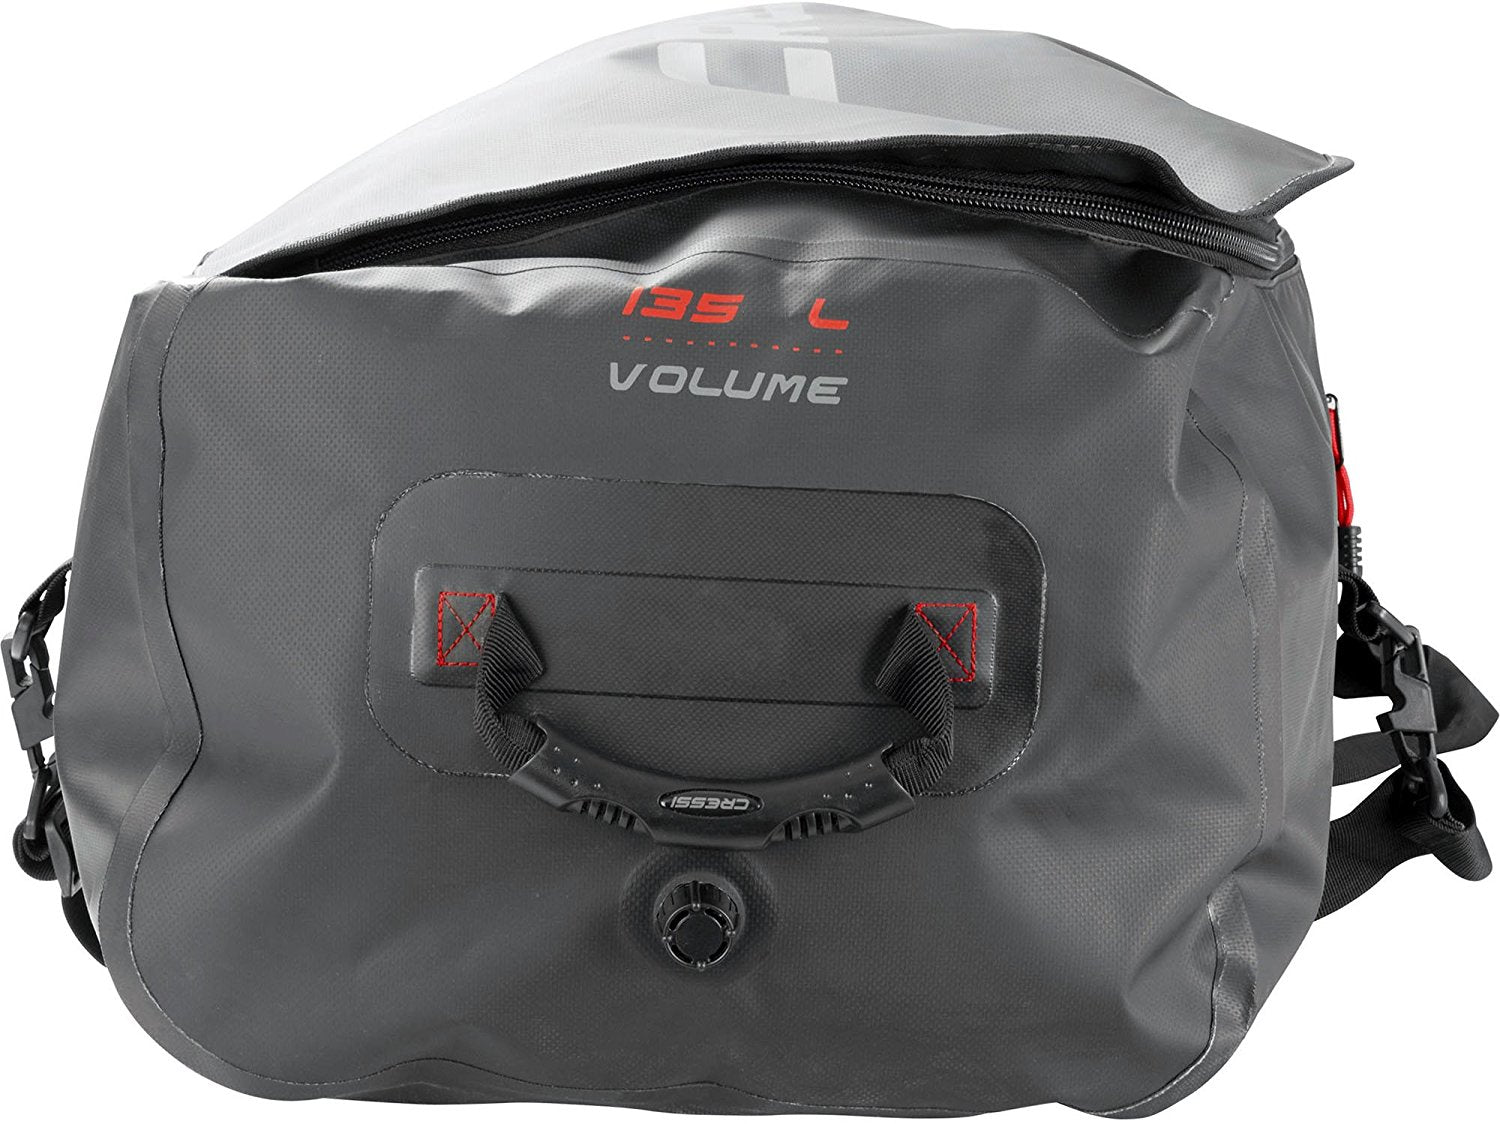 Cressi Gorilla Pro XL Bag Handles